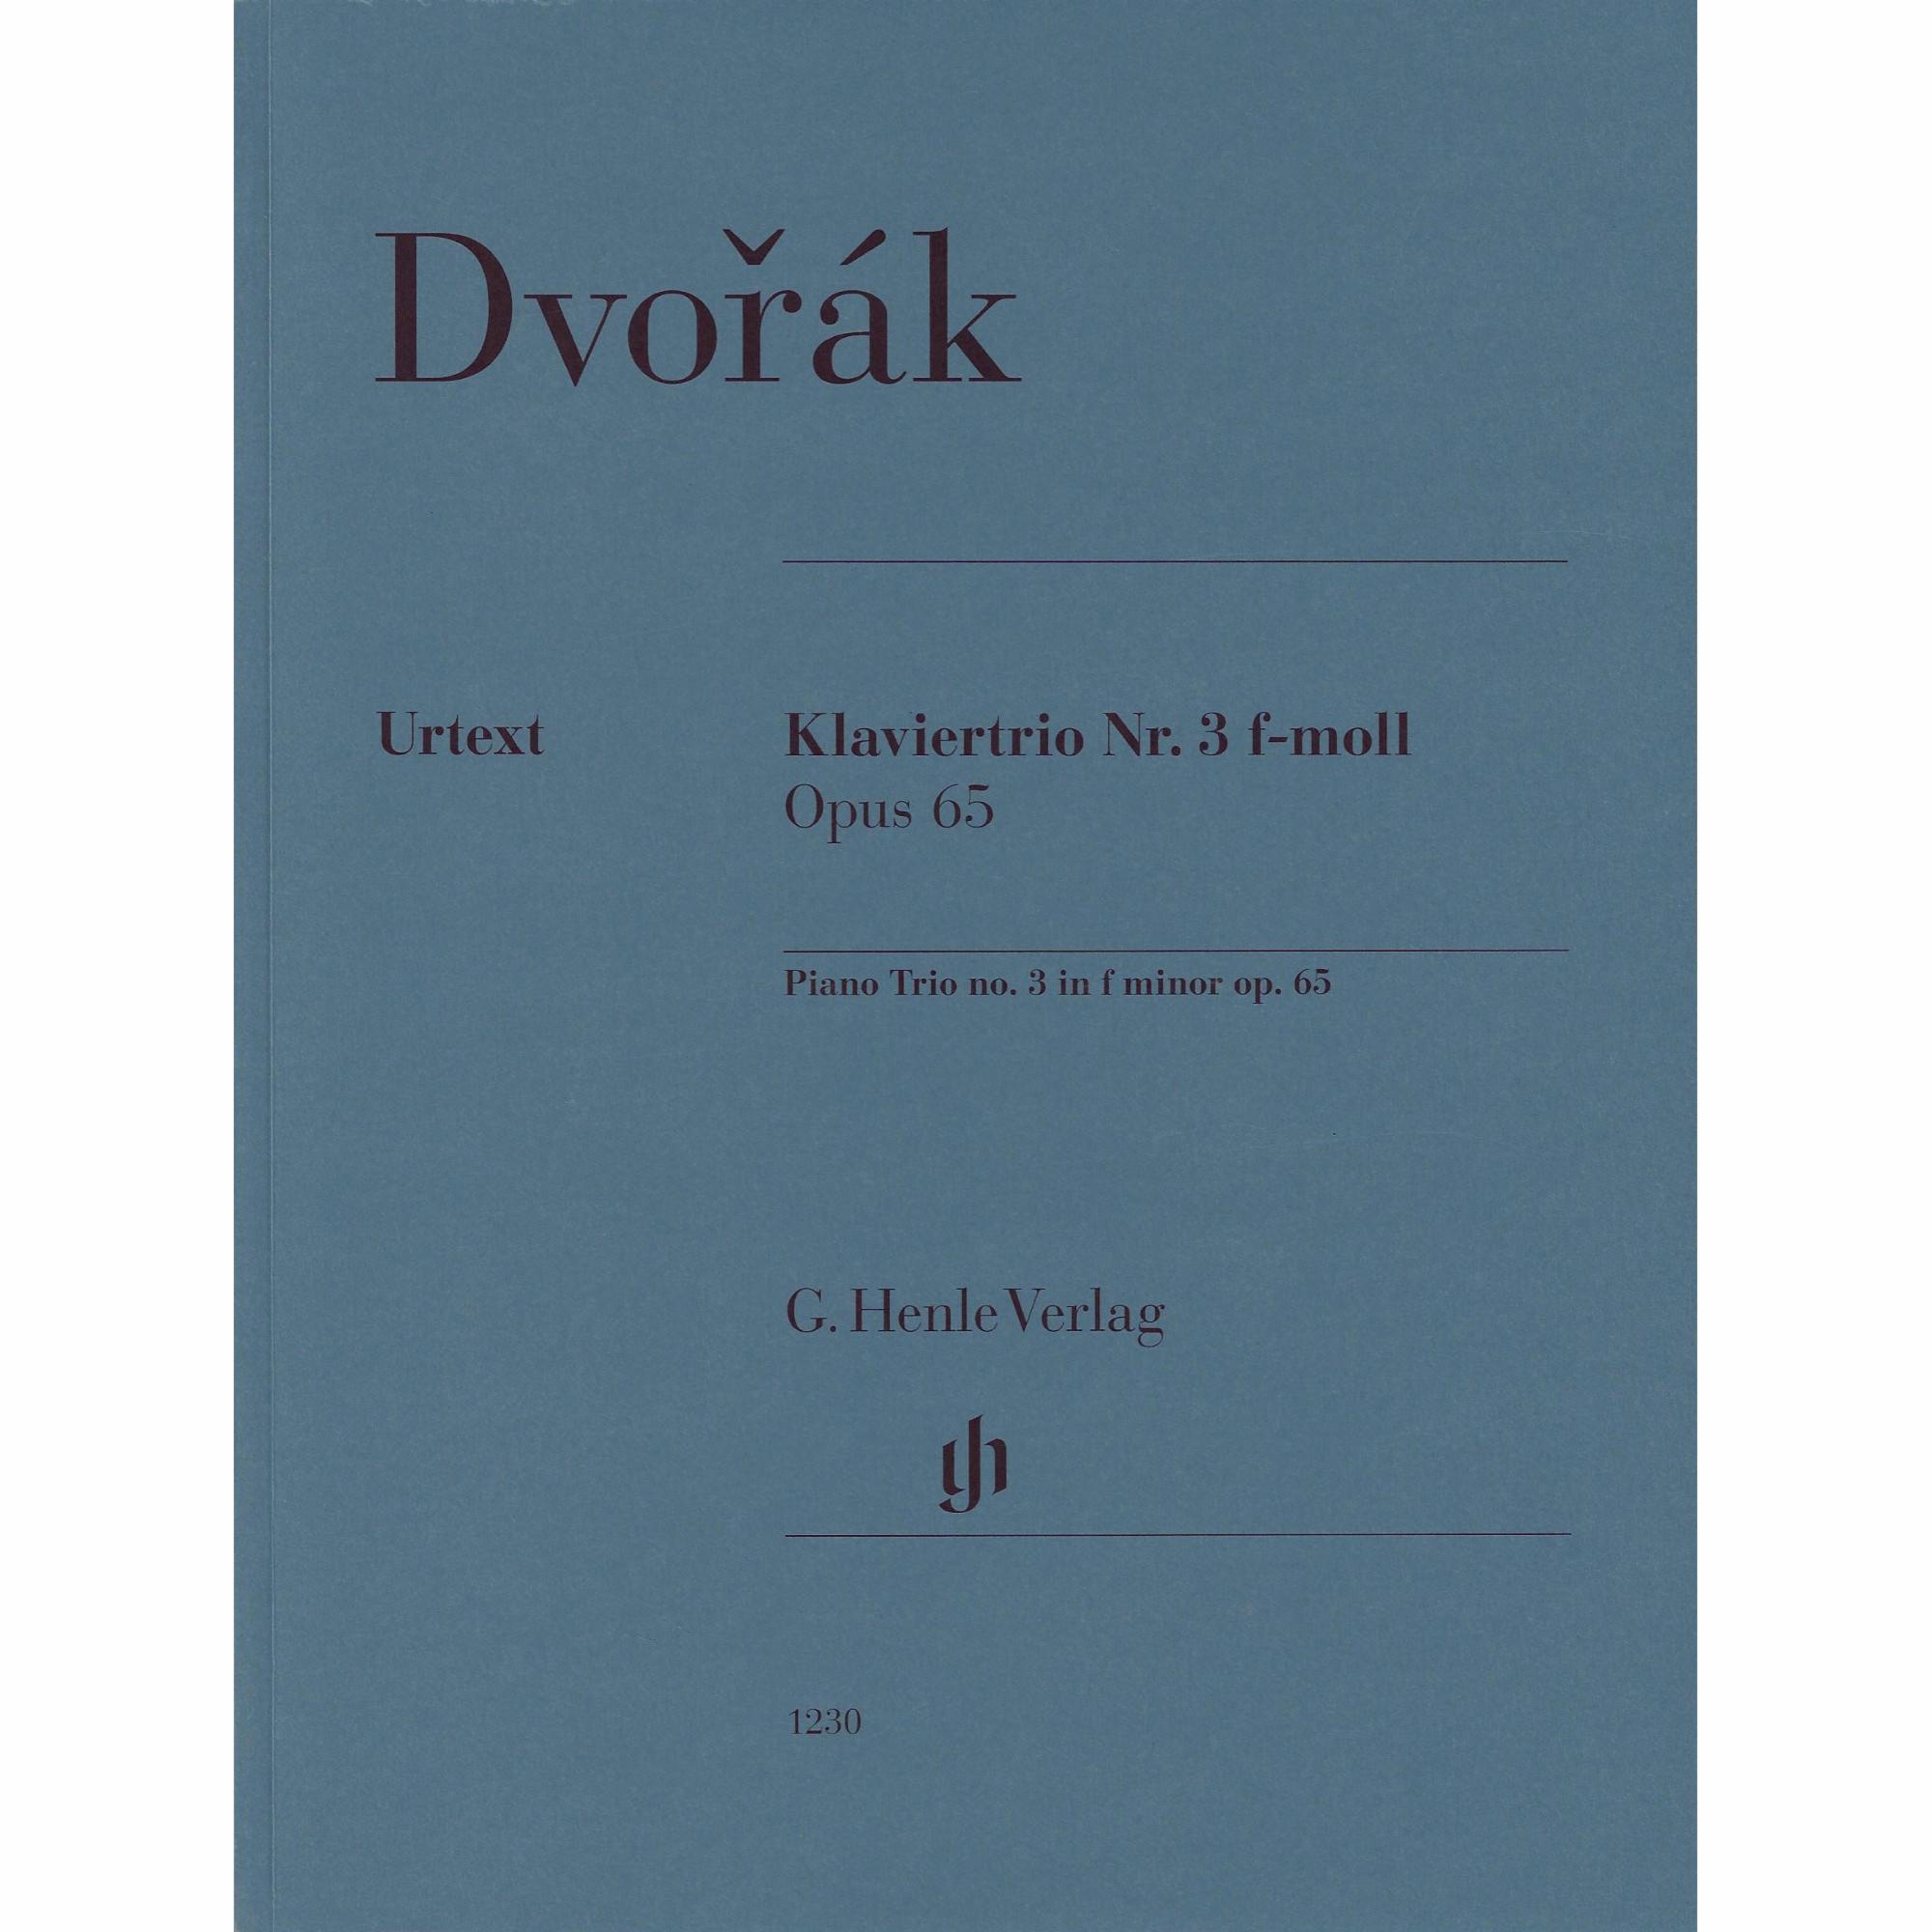 Dvorak -- Piano Trio No. 3 in F Minor, Op. 65